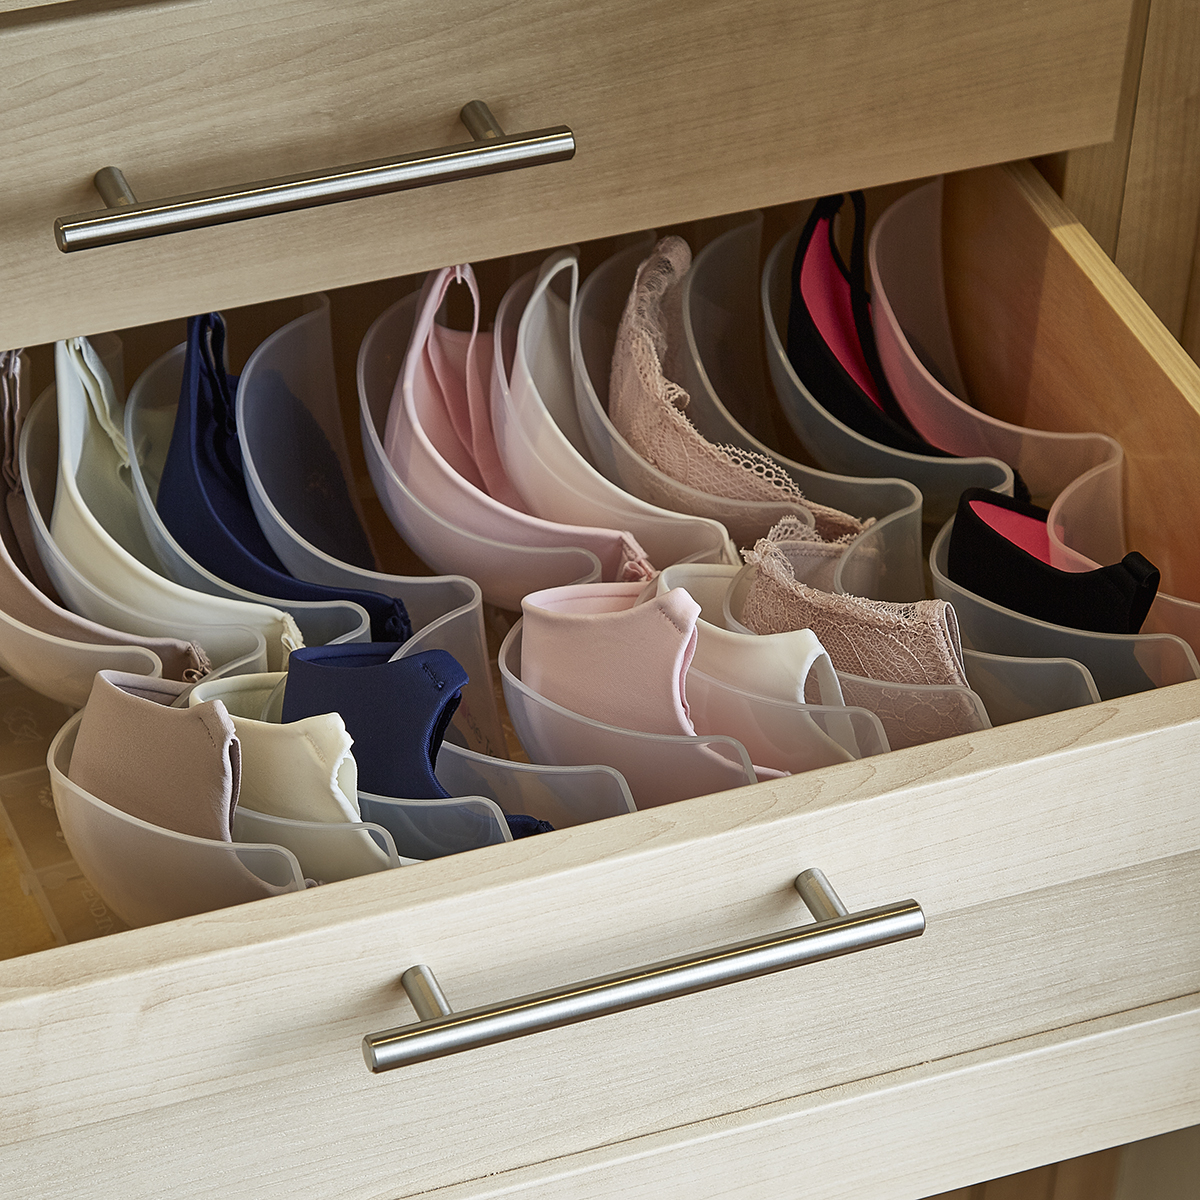 Details about   Foldable Storage Bra Underwear Tie Closet Organizer Drawer Divider Container SMA 